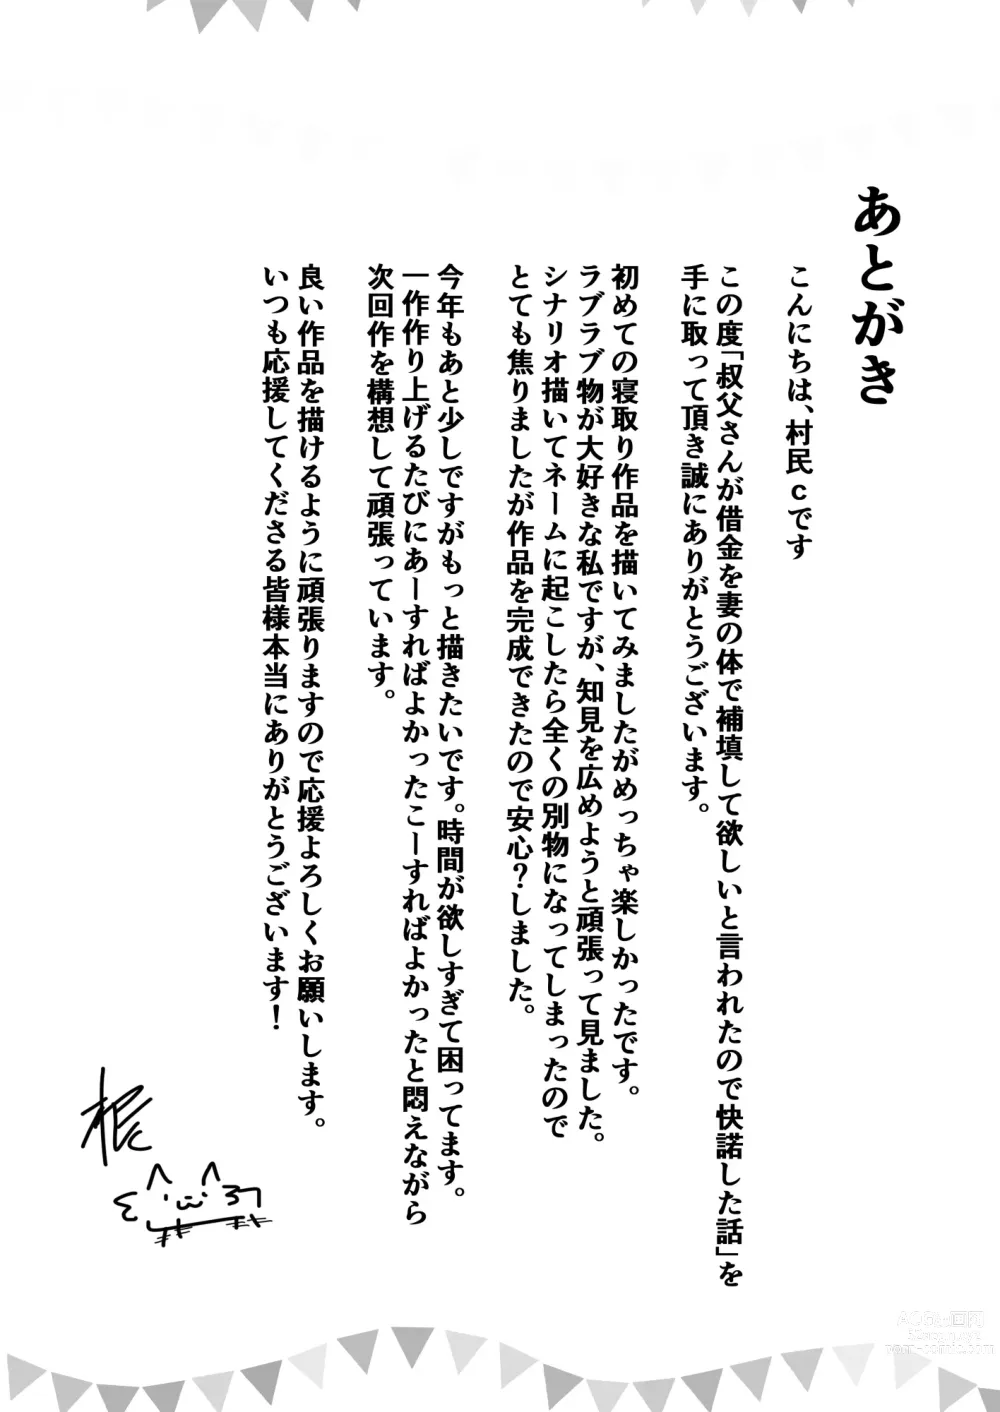 Page 40 of doujinshi Ojisanga shakinwo tsumano karadade hotenshitehoshiito iwaretanode kaidakushita hanashi